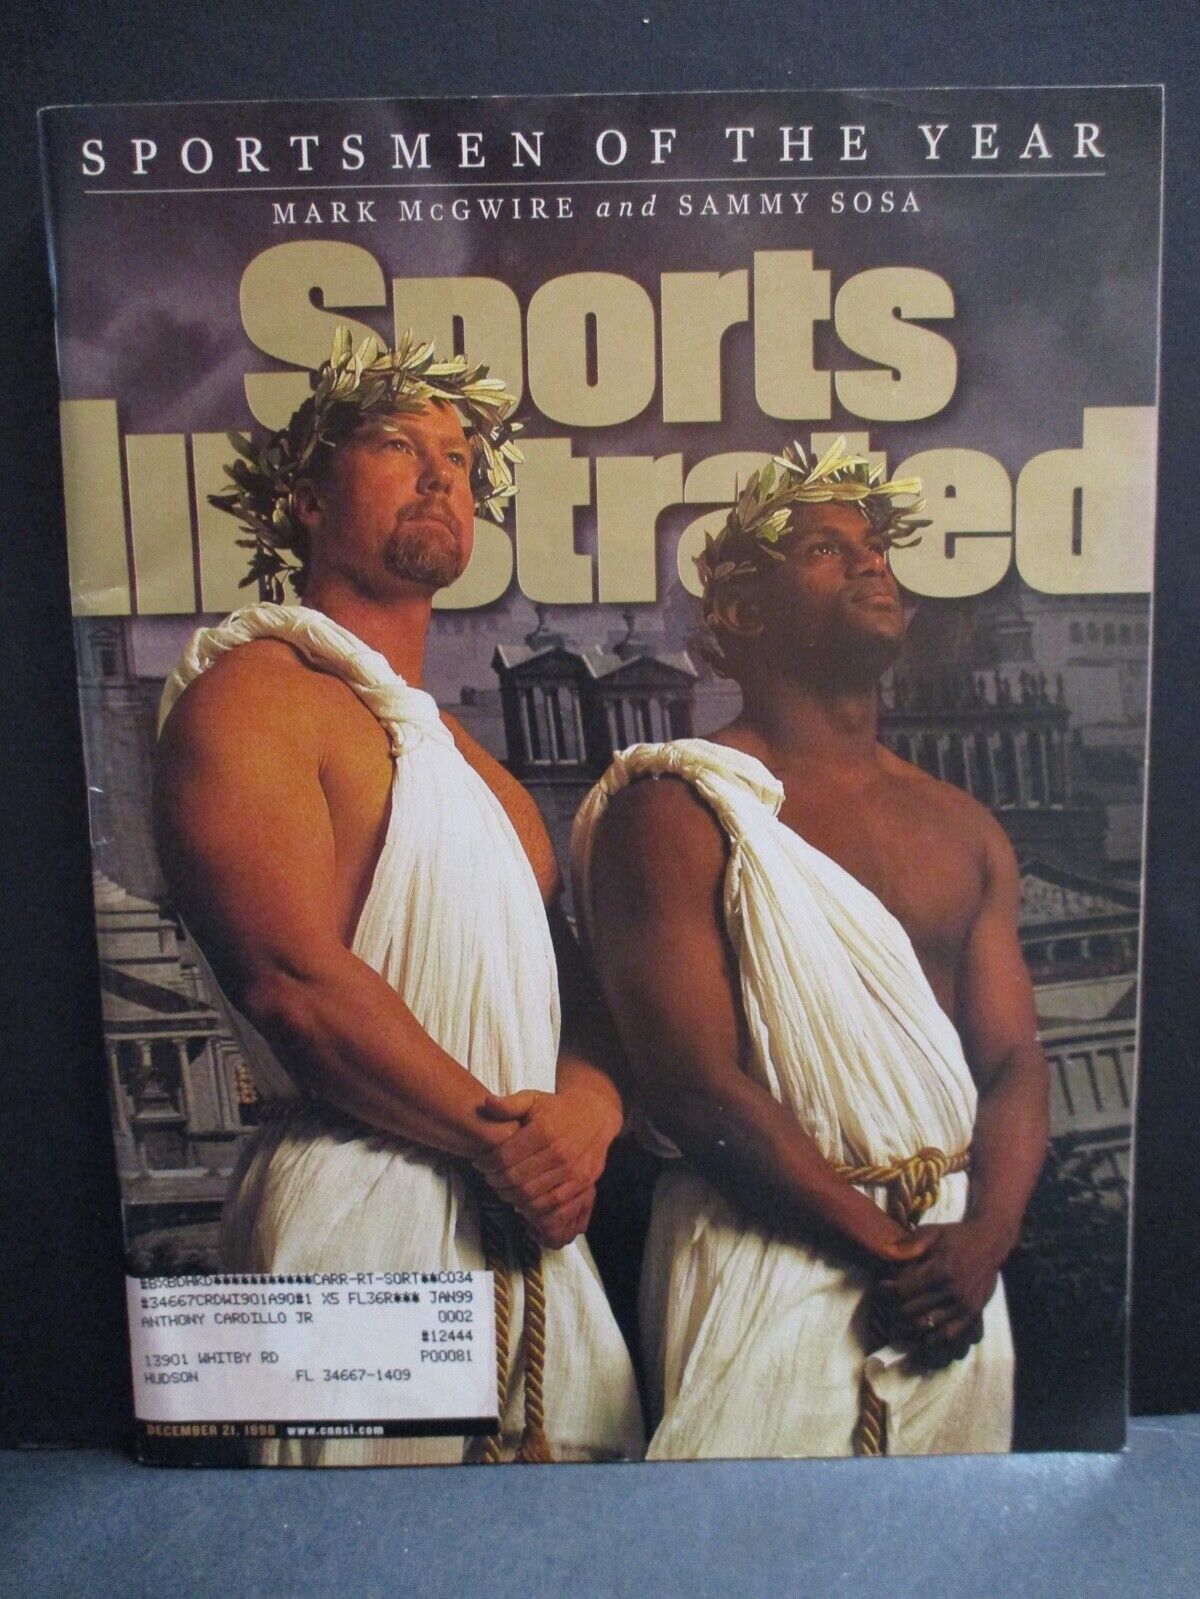 Sports Illustrated Magazine Dec 21 1998 Sosa McGwire Cover Ship Label VG-EX